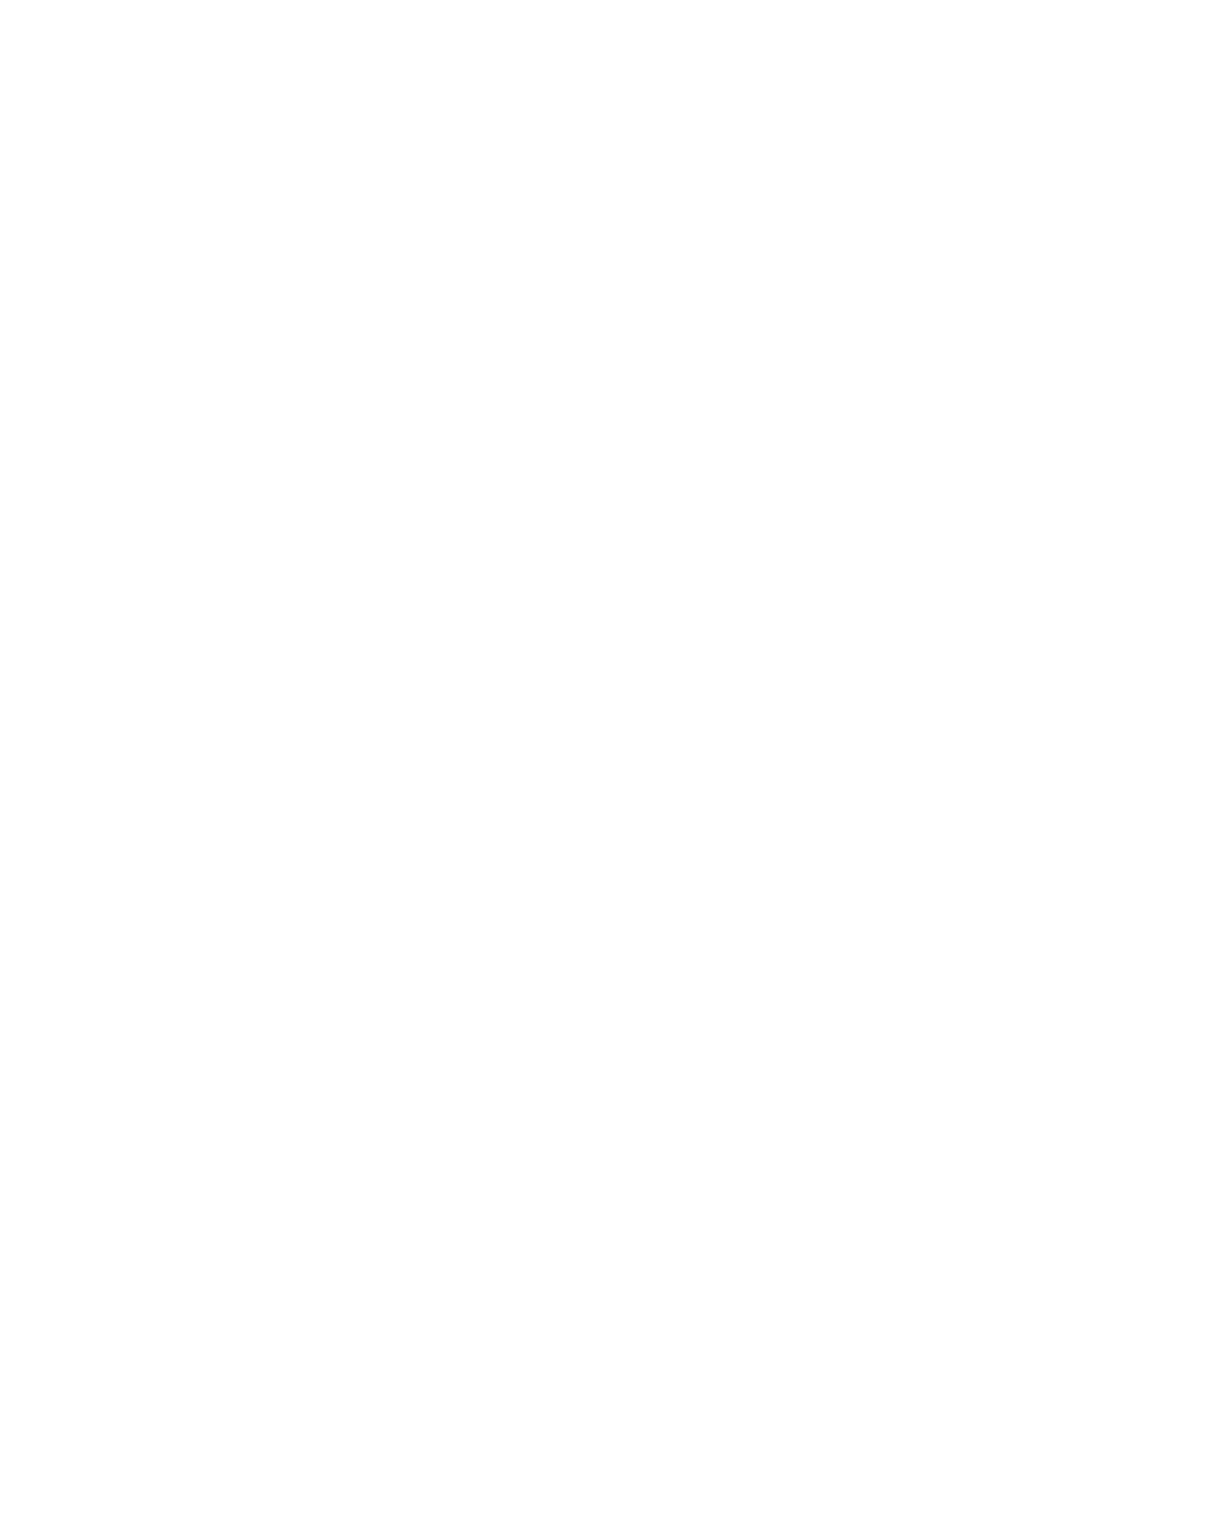 Cadiz logo grand pour les fonds sombres (PNG transparent)